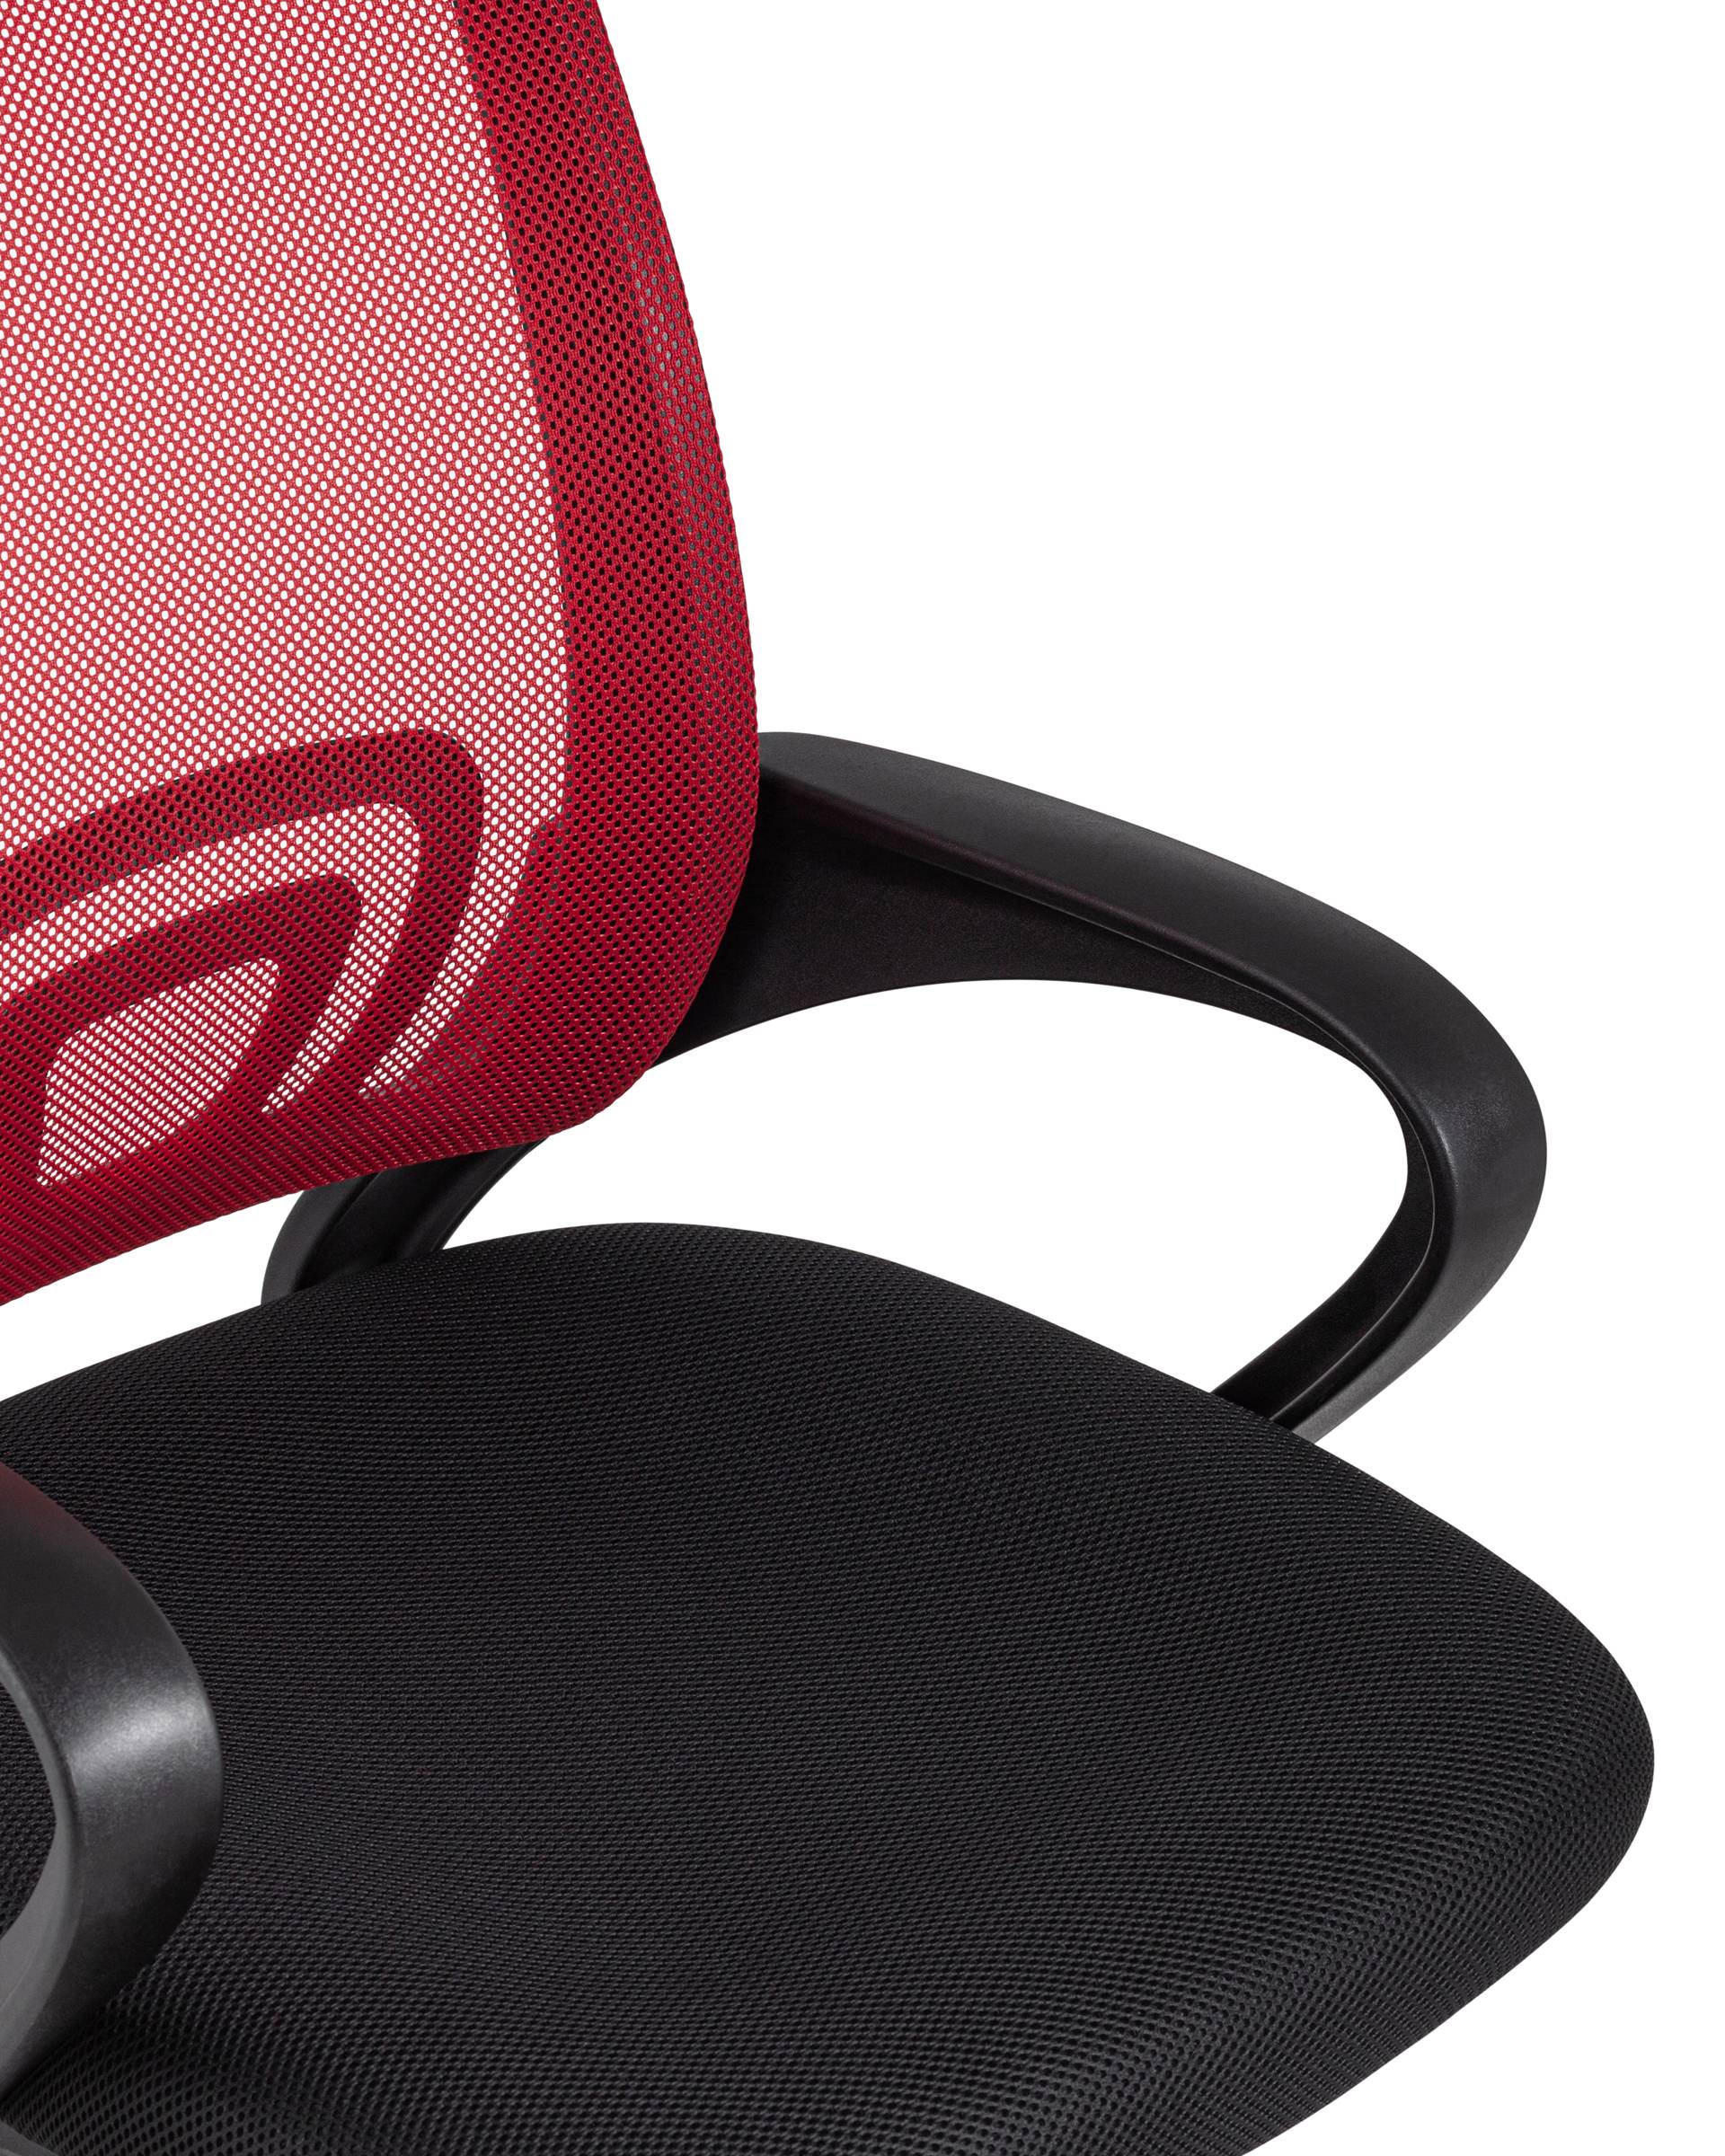 Кресло офисное TopChairs Simple красное из Италии